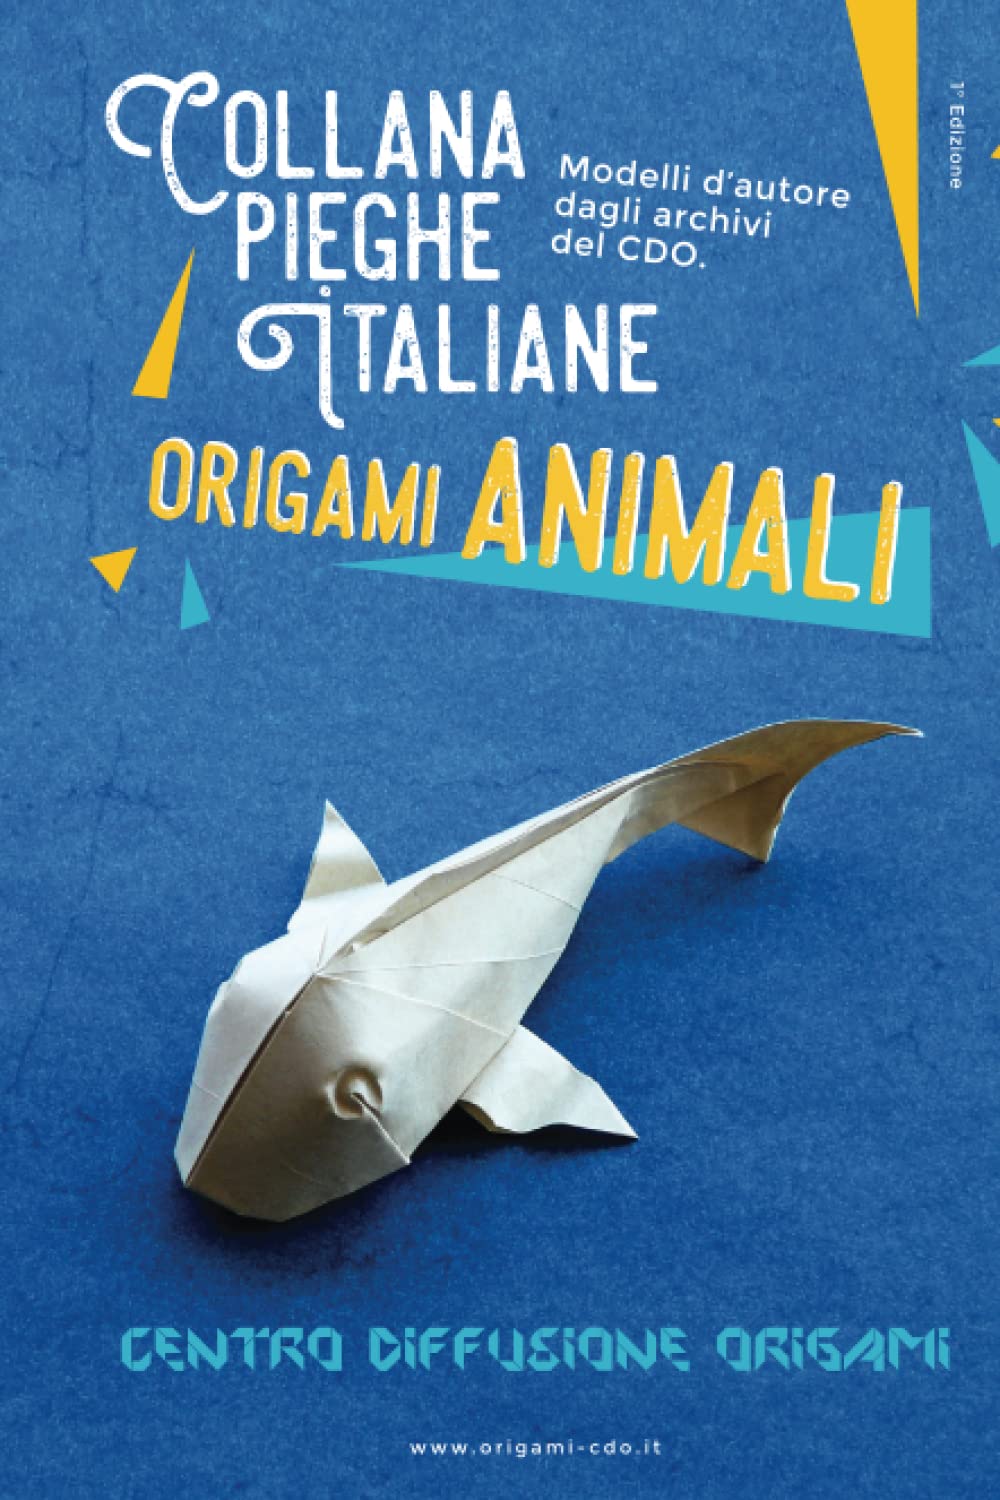 Collana pieghe Italiane - origami ANIMALI : page 64.